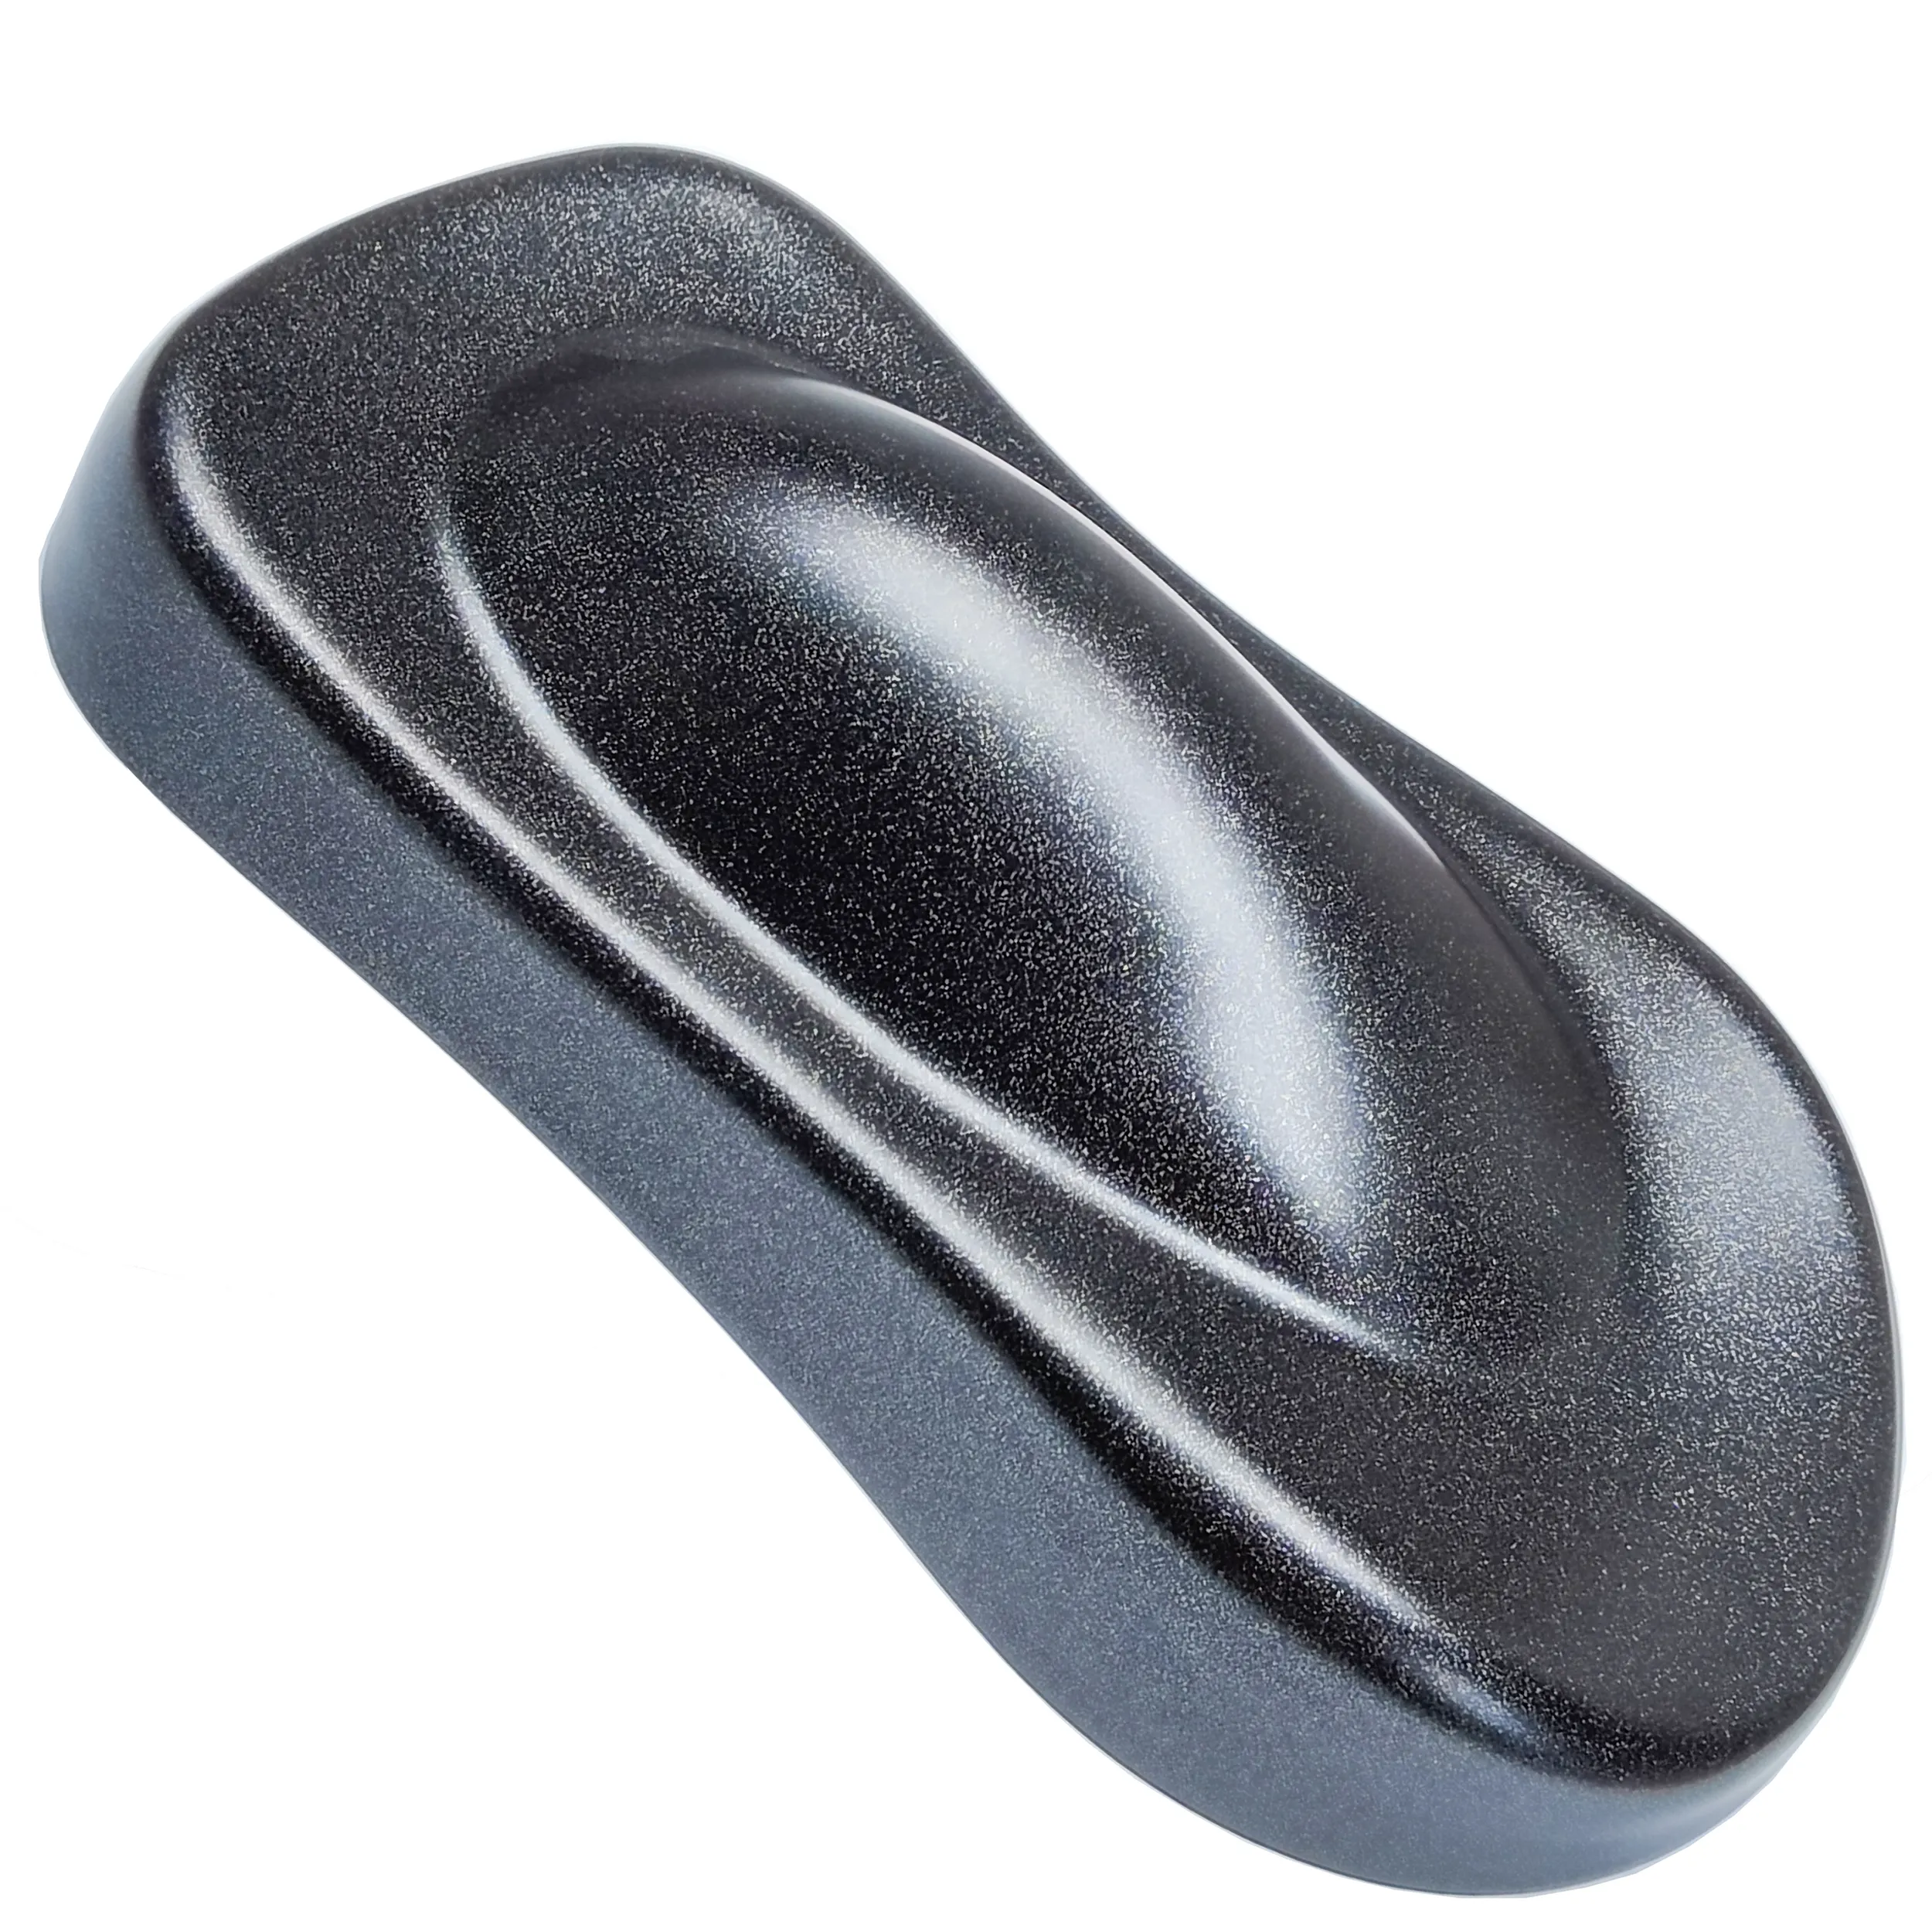 Mobilya sprey toz kaplama için en popüler siyah yarı parlak inci termoset Polyester tozlar